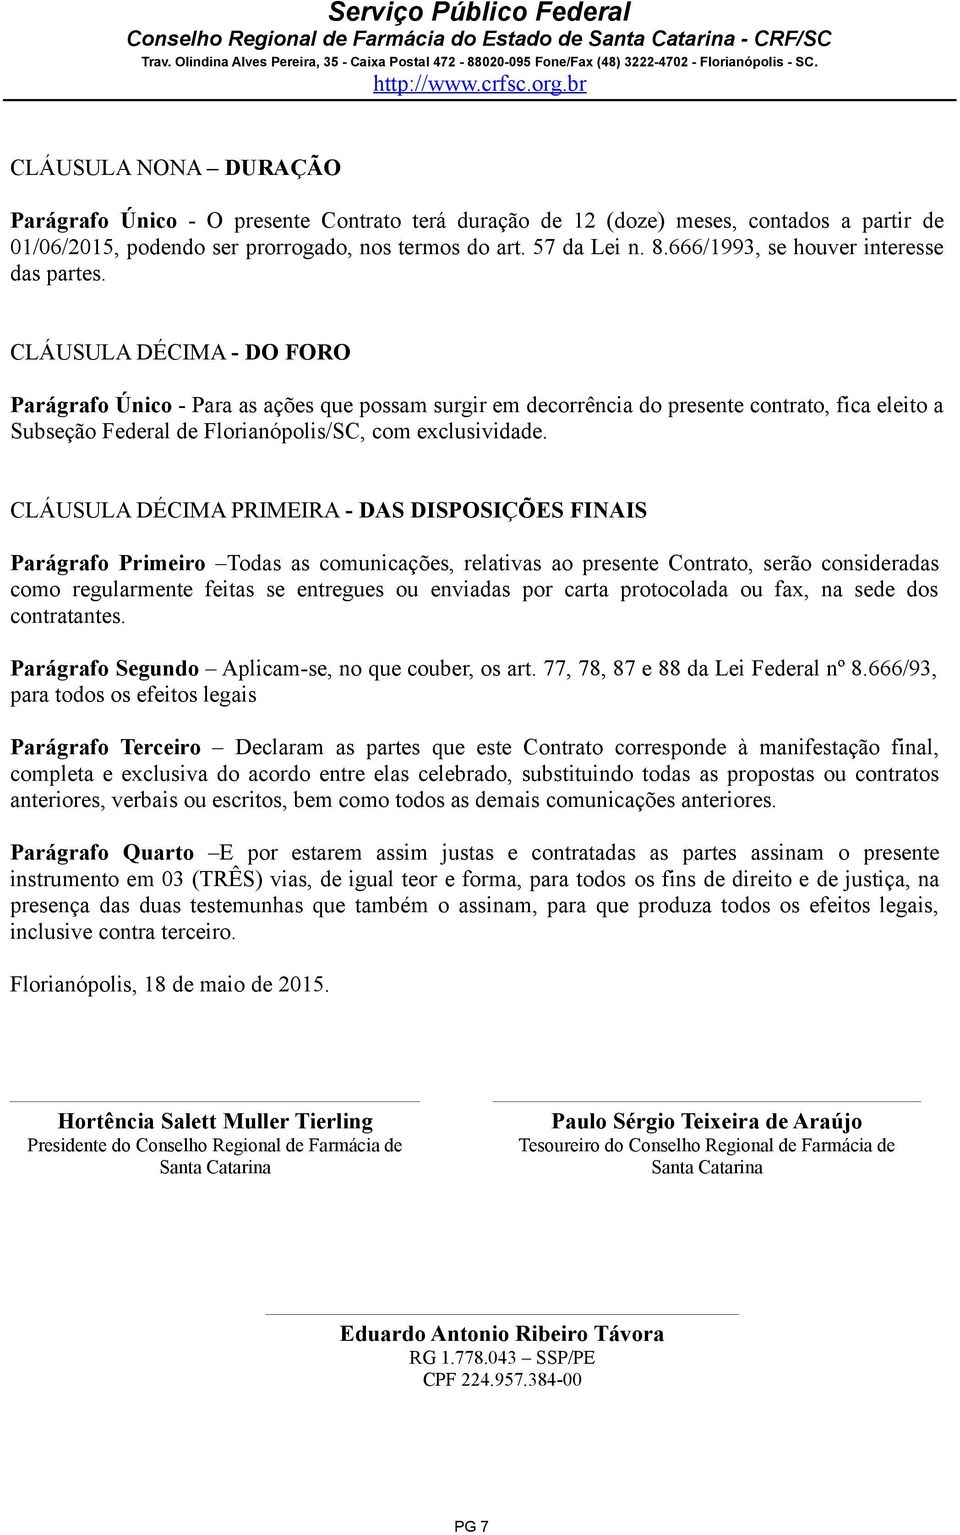 CLÁUSULA DÉCIMA - DO FORO Parágrafo Único - Para as ações que possam surgir em decorrência do presente contrato, fica eleito a Subseção Federal de Florianópolis/SC, com exclusividade.